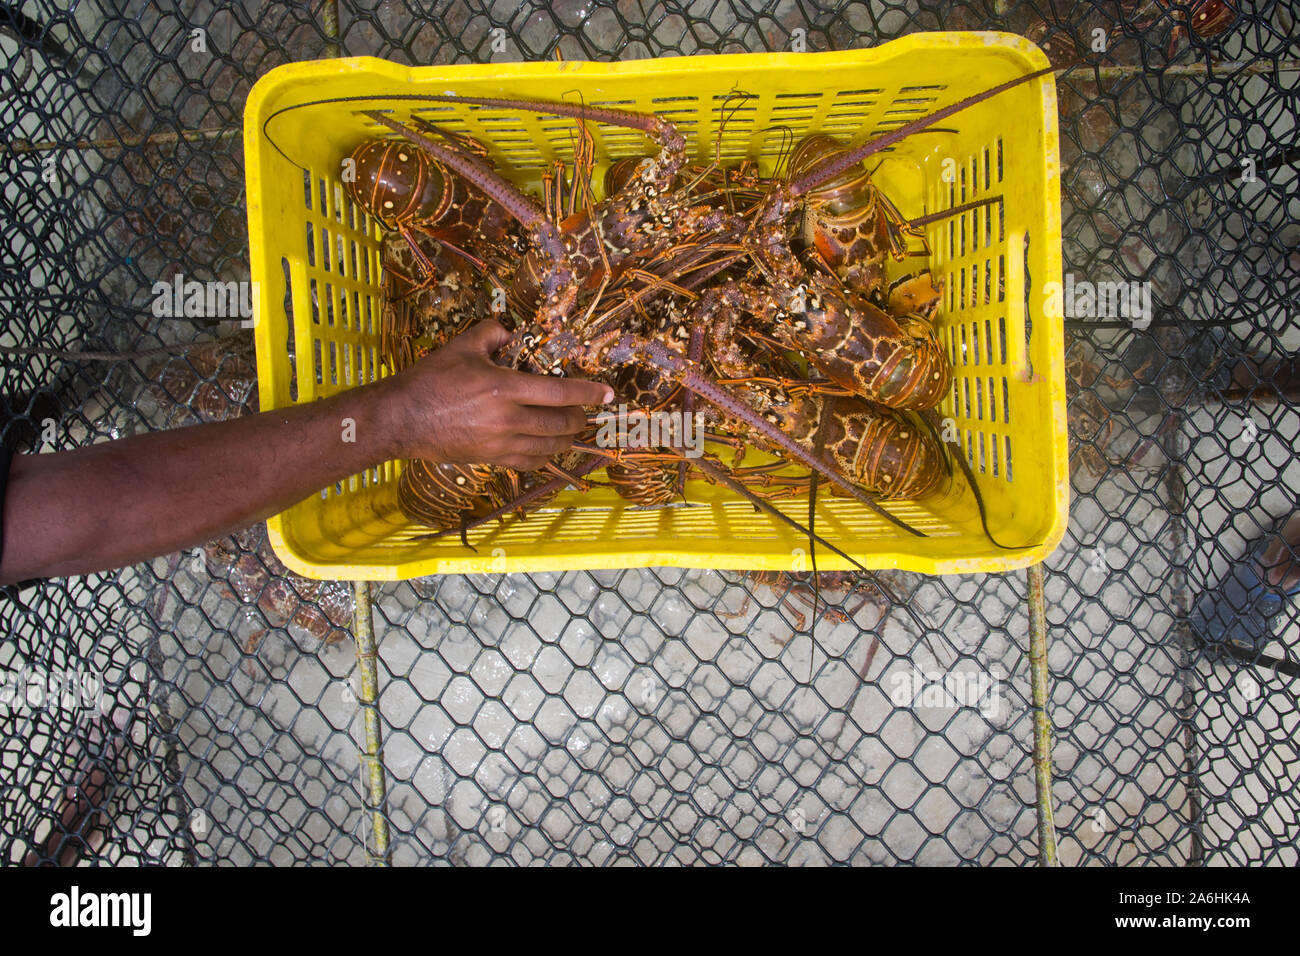 Un homme éjacule langouste fraîchement pêché durant la saison régulière pour l'exploitation du homard Homard Floride LOS ROQUES AU VENEZUELA. Banque D'Images